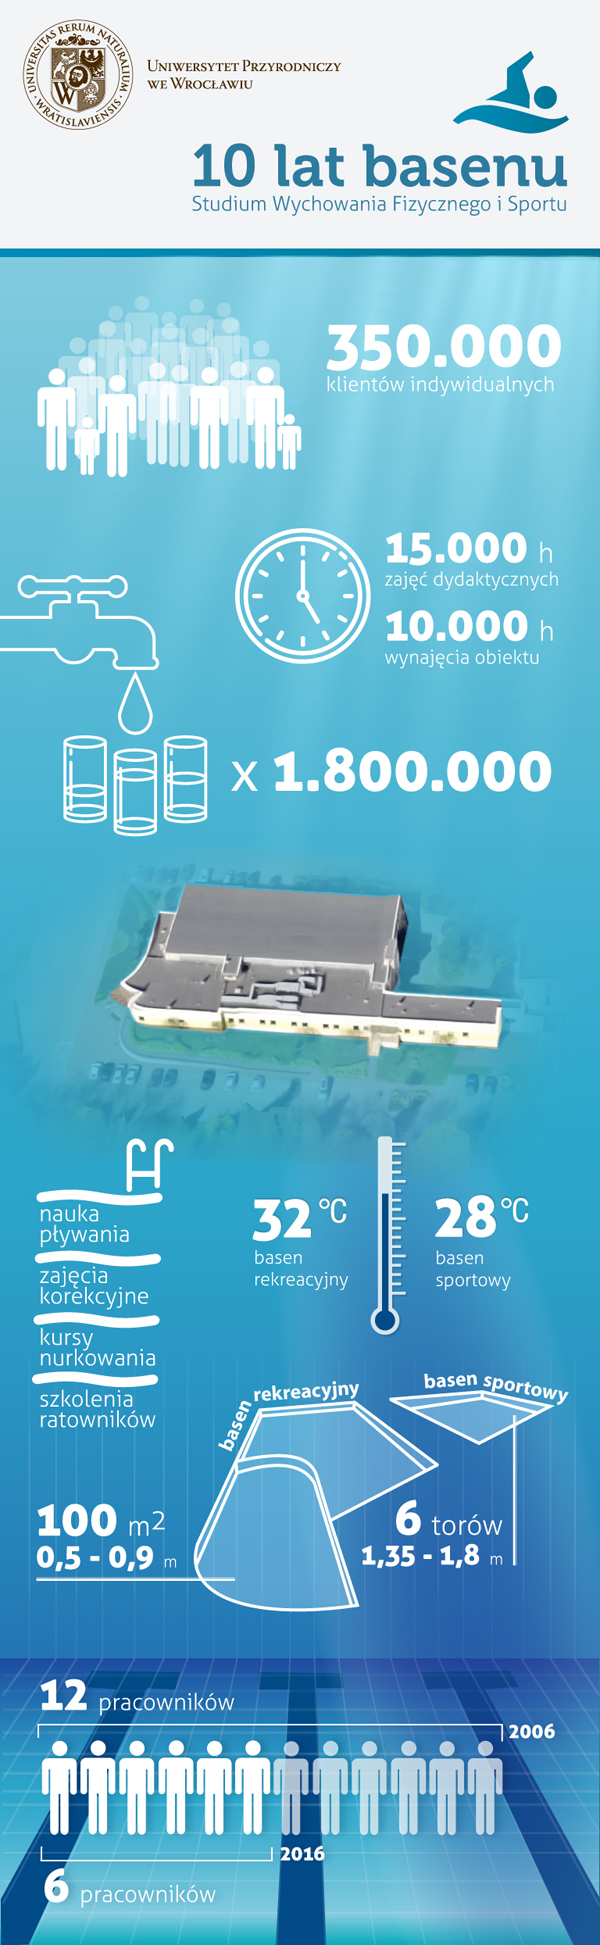 infografika otwarcie krytej pływalni 2006 rok akademia rolnicza uniwersytet przyrodniczy we wrocławi